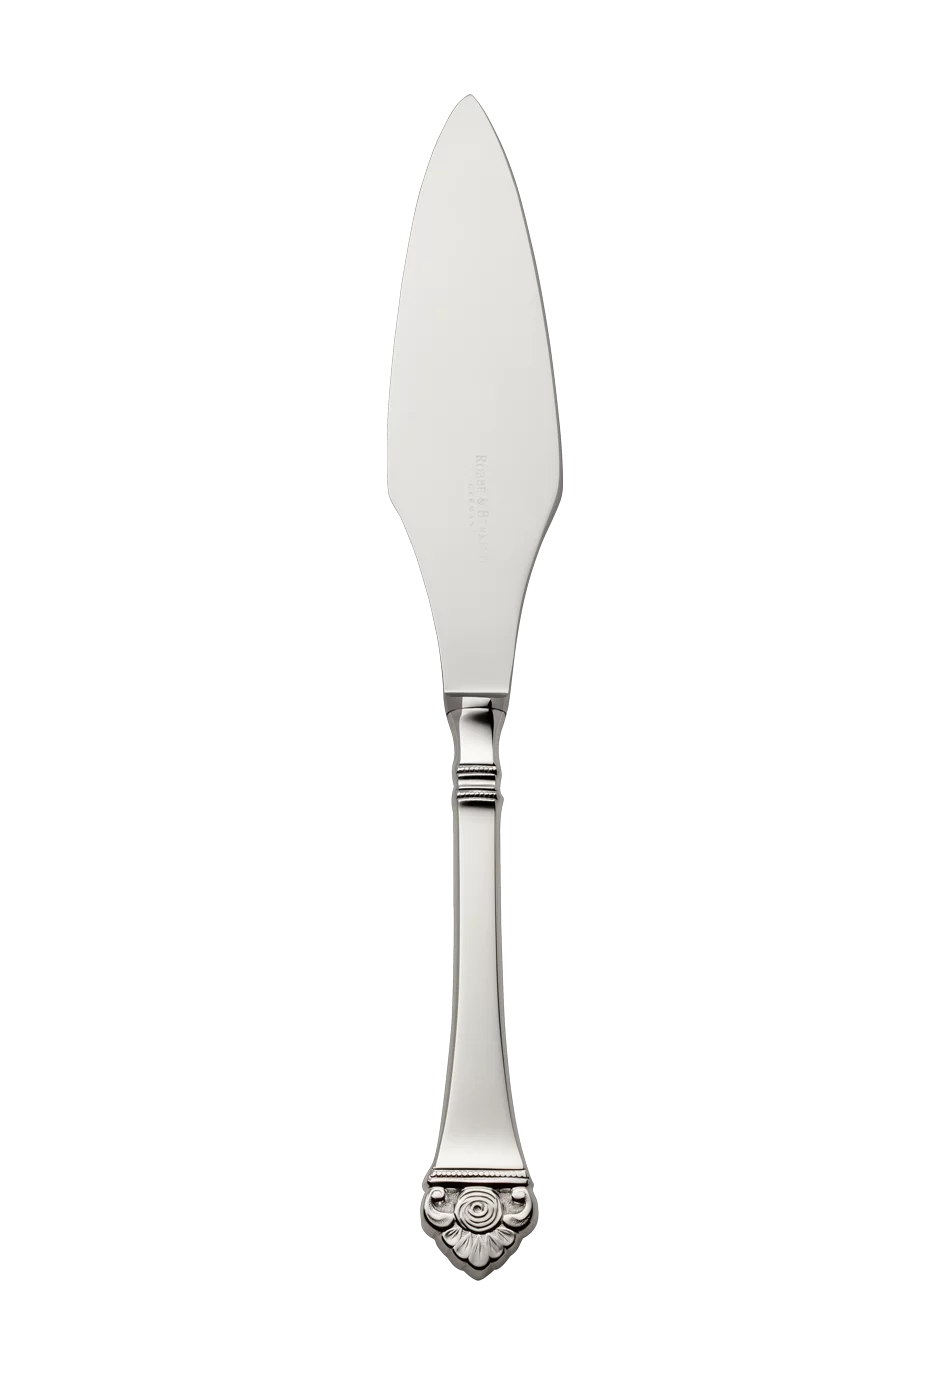 Rosenmuster Tart Knife (150g massive silverplated)